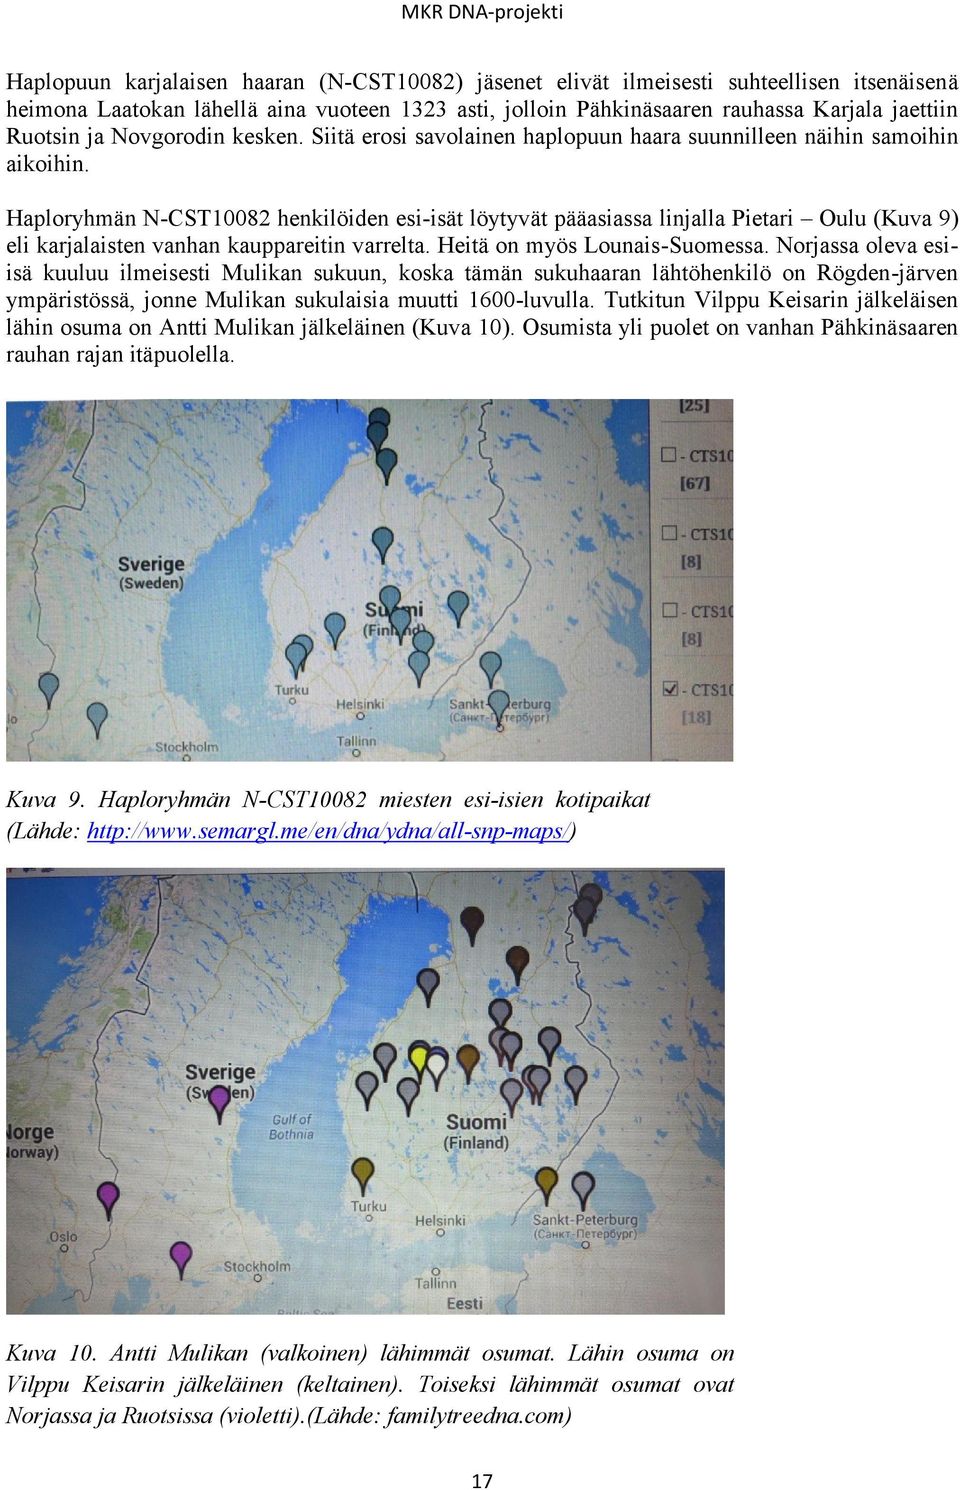 Haploryhmän N-CST10082 henkilöiden esi-isät löytyvät pääasiassa linjalla Pietari Oulu (Kuva 9) eli karjalaisten vanhan kauppareitin varrelta. Heitä on myös Lounais-Suomessa.